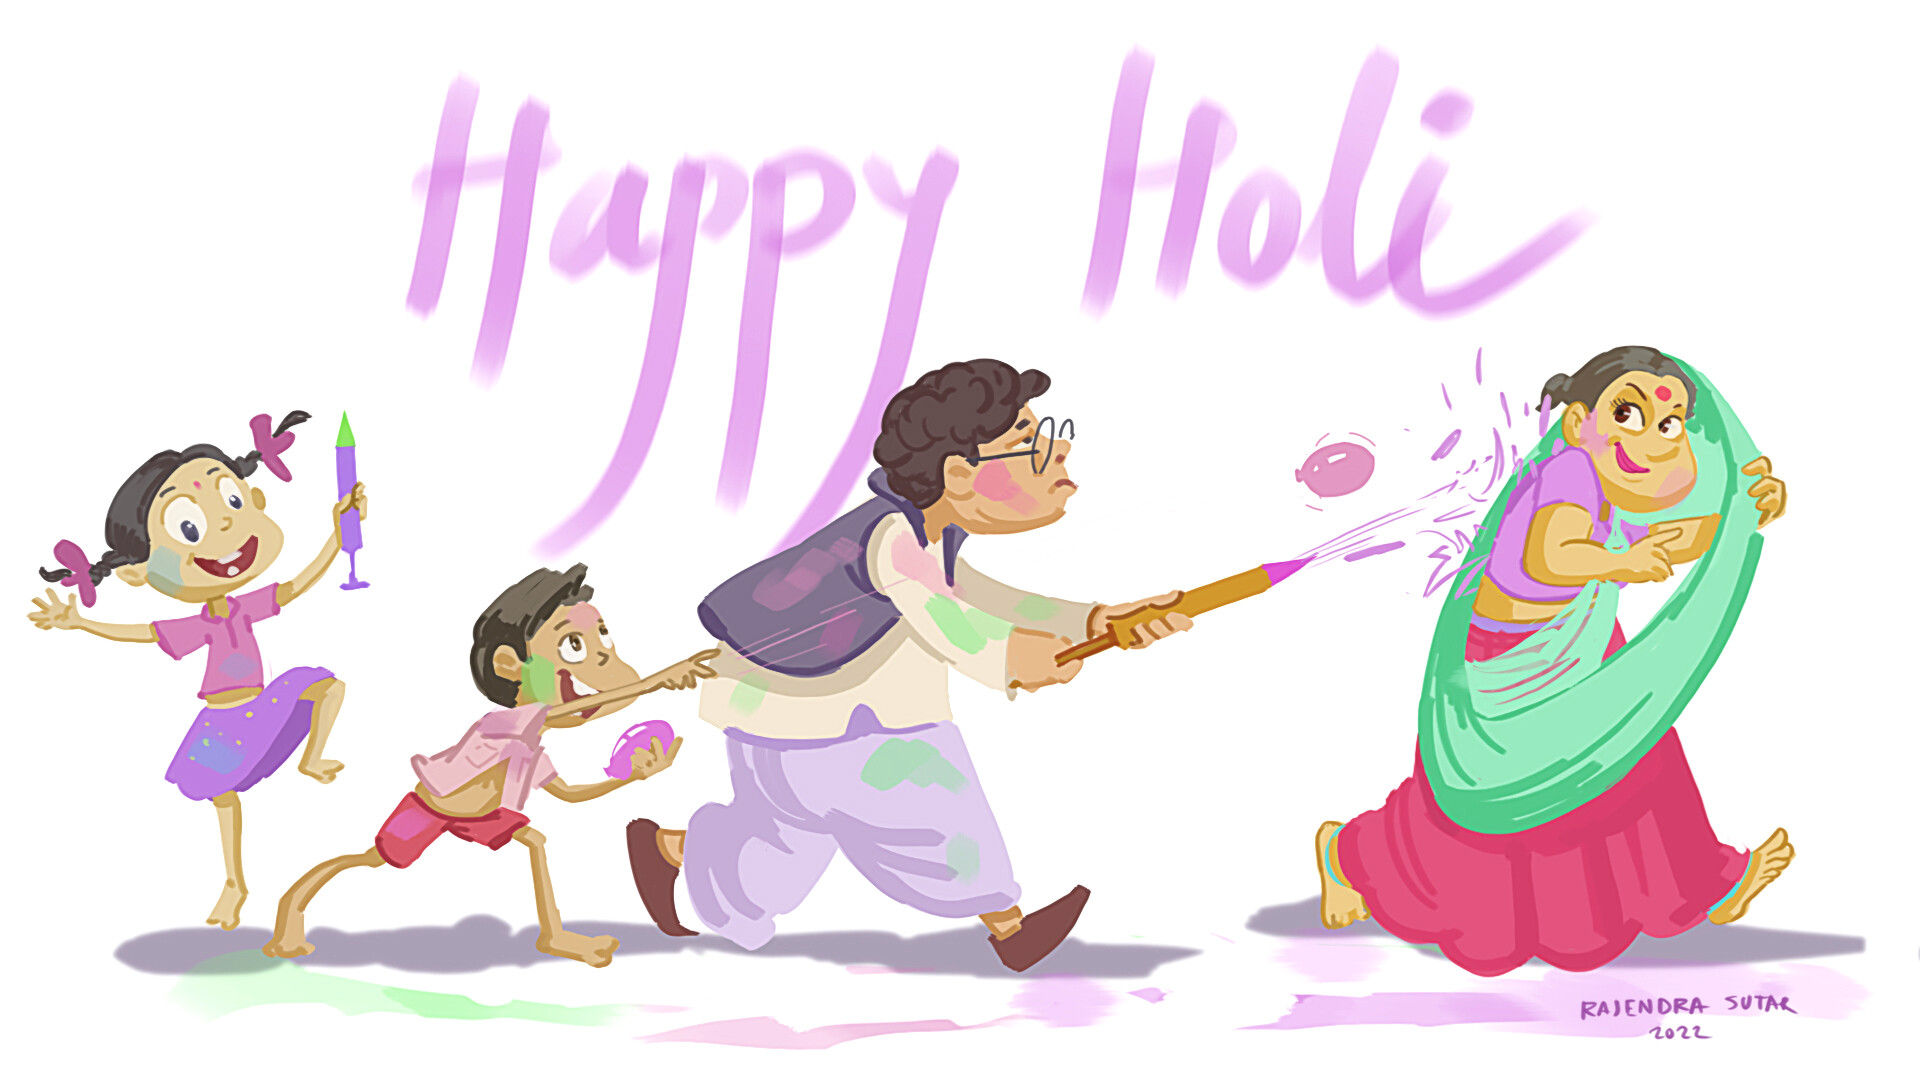 rajendra sutar - Happy Holi Celebration 2022 with Family